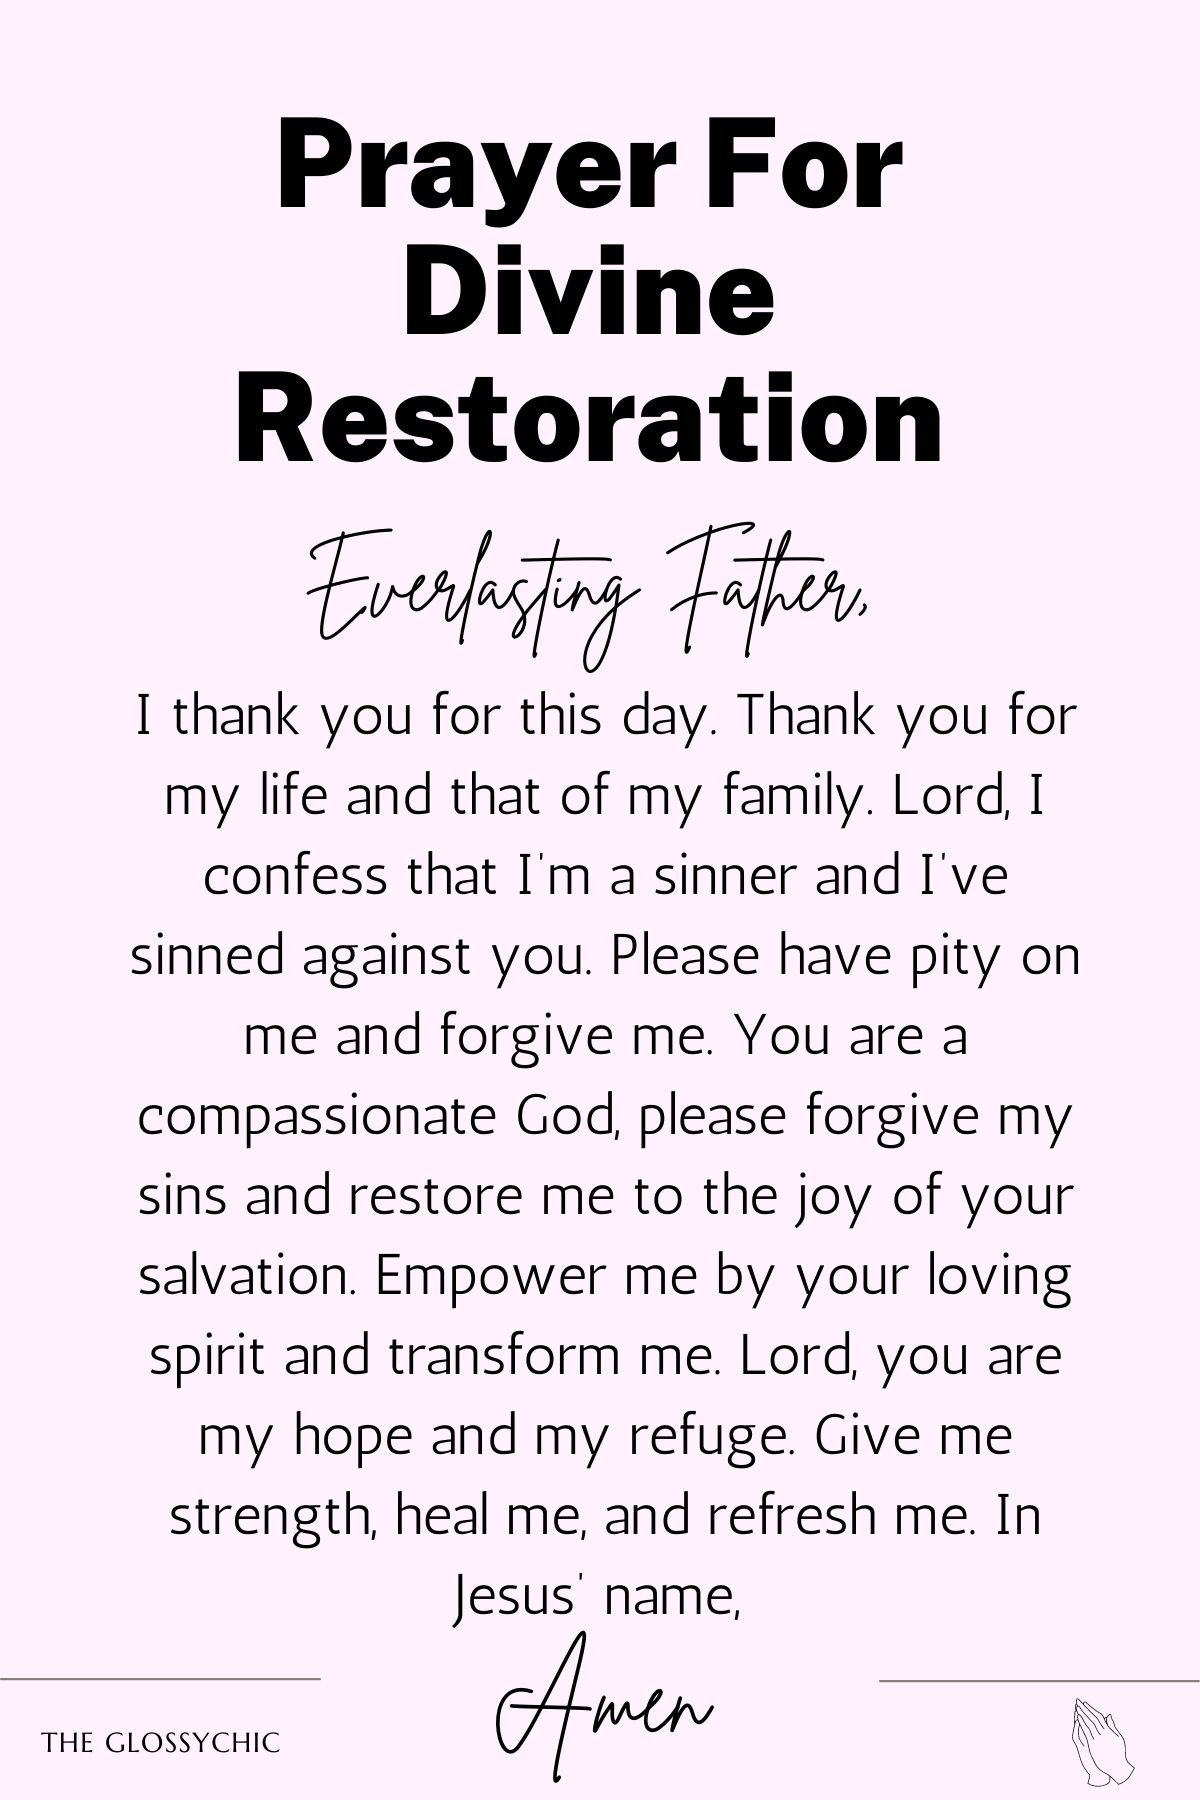 Prayer for divine restoration